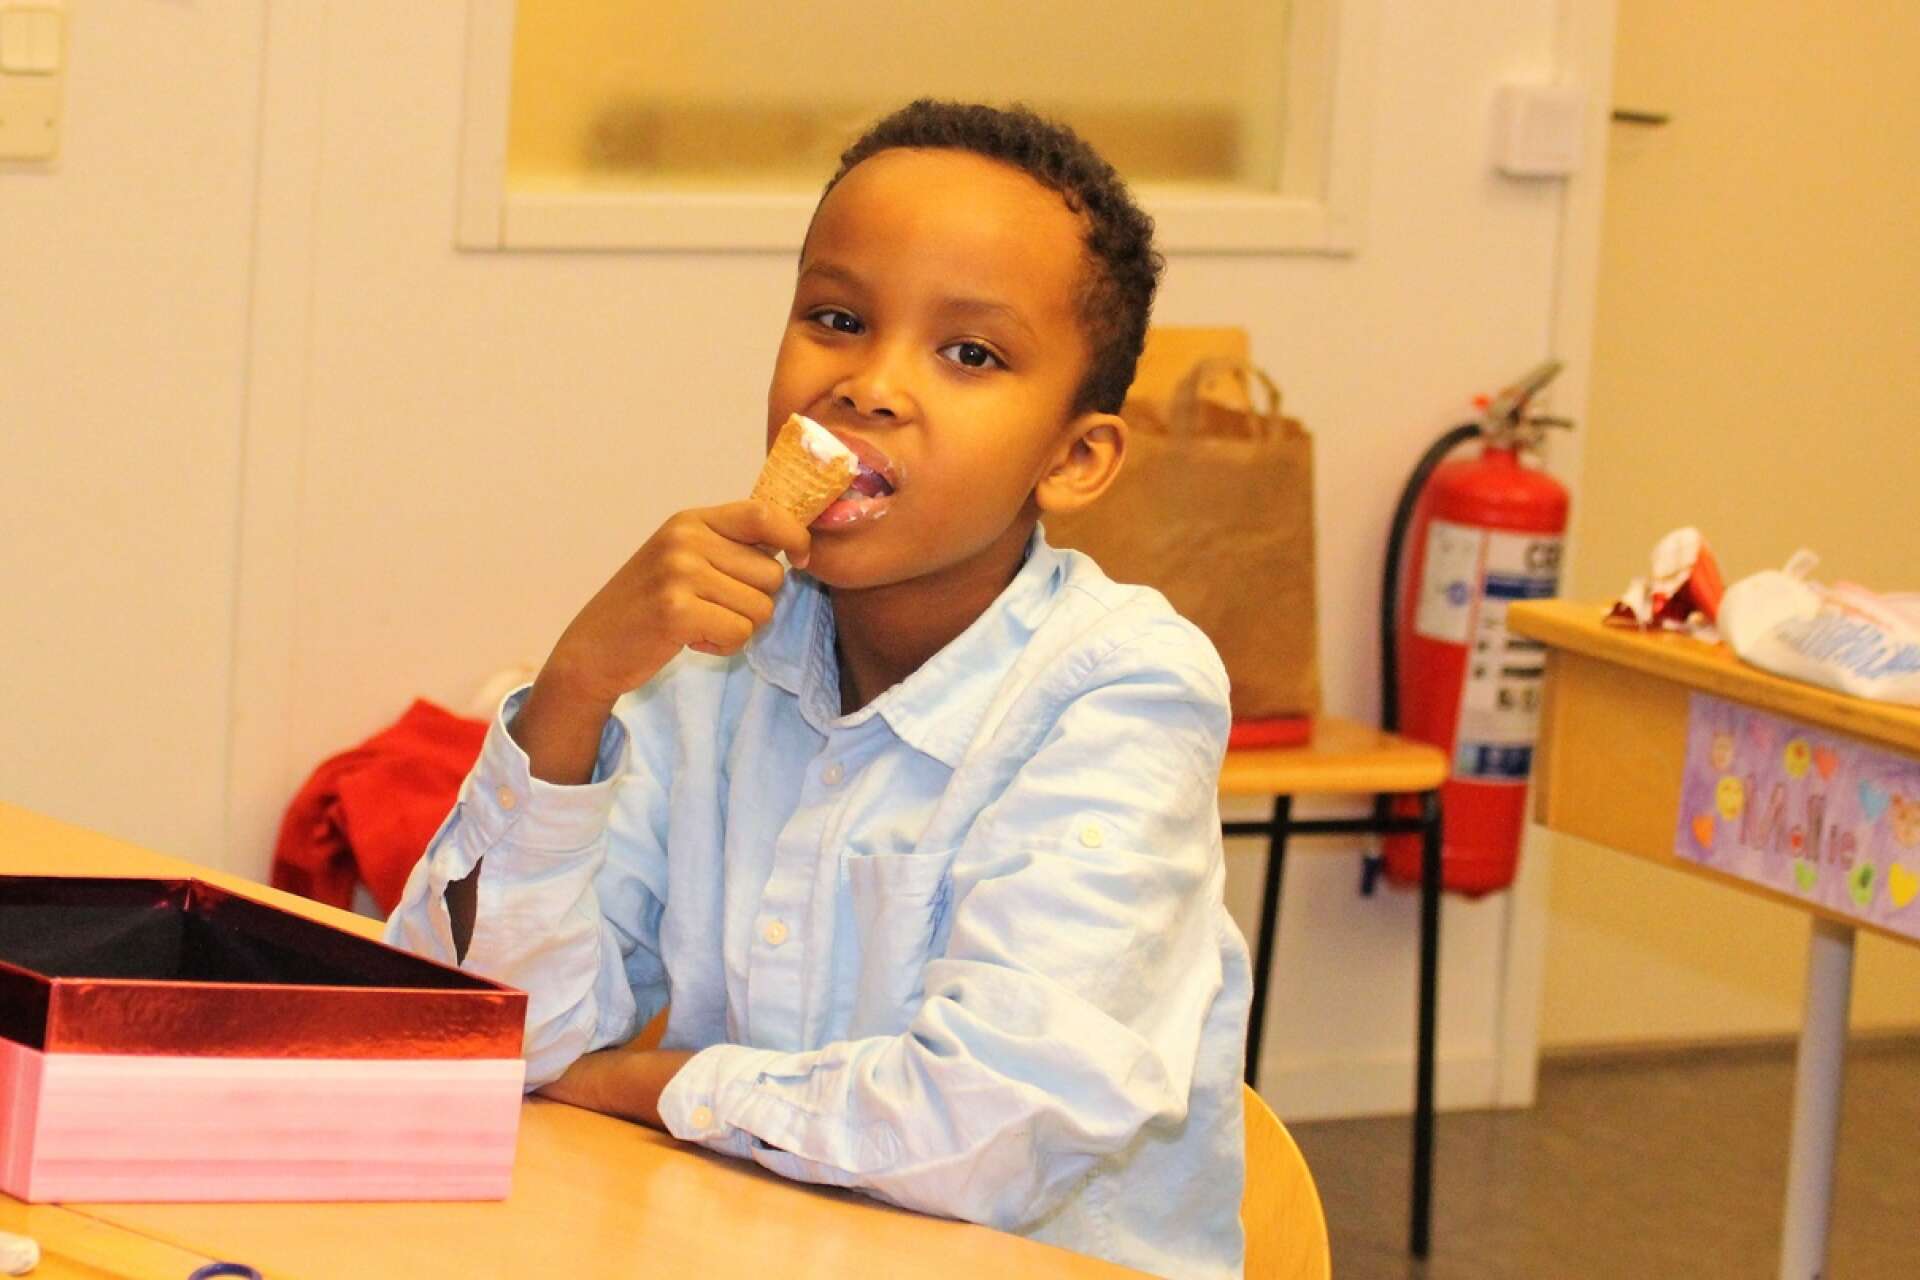 Said Ahmed var nöjd med att bli bjuden på glass under lektionstid och visade prov på goda kvaliteter i huvudräkning.